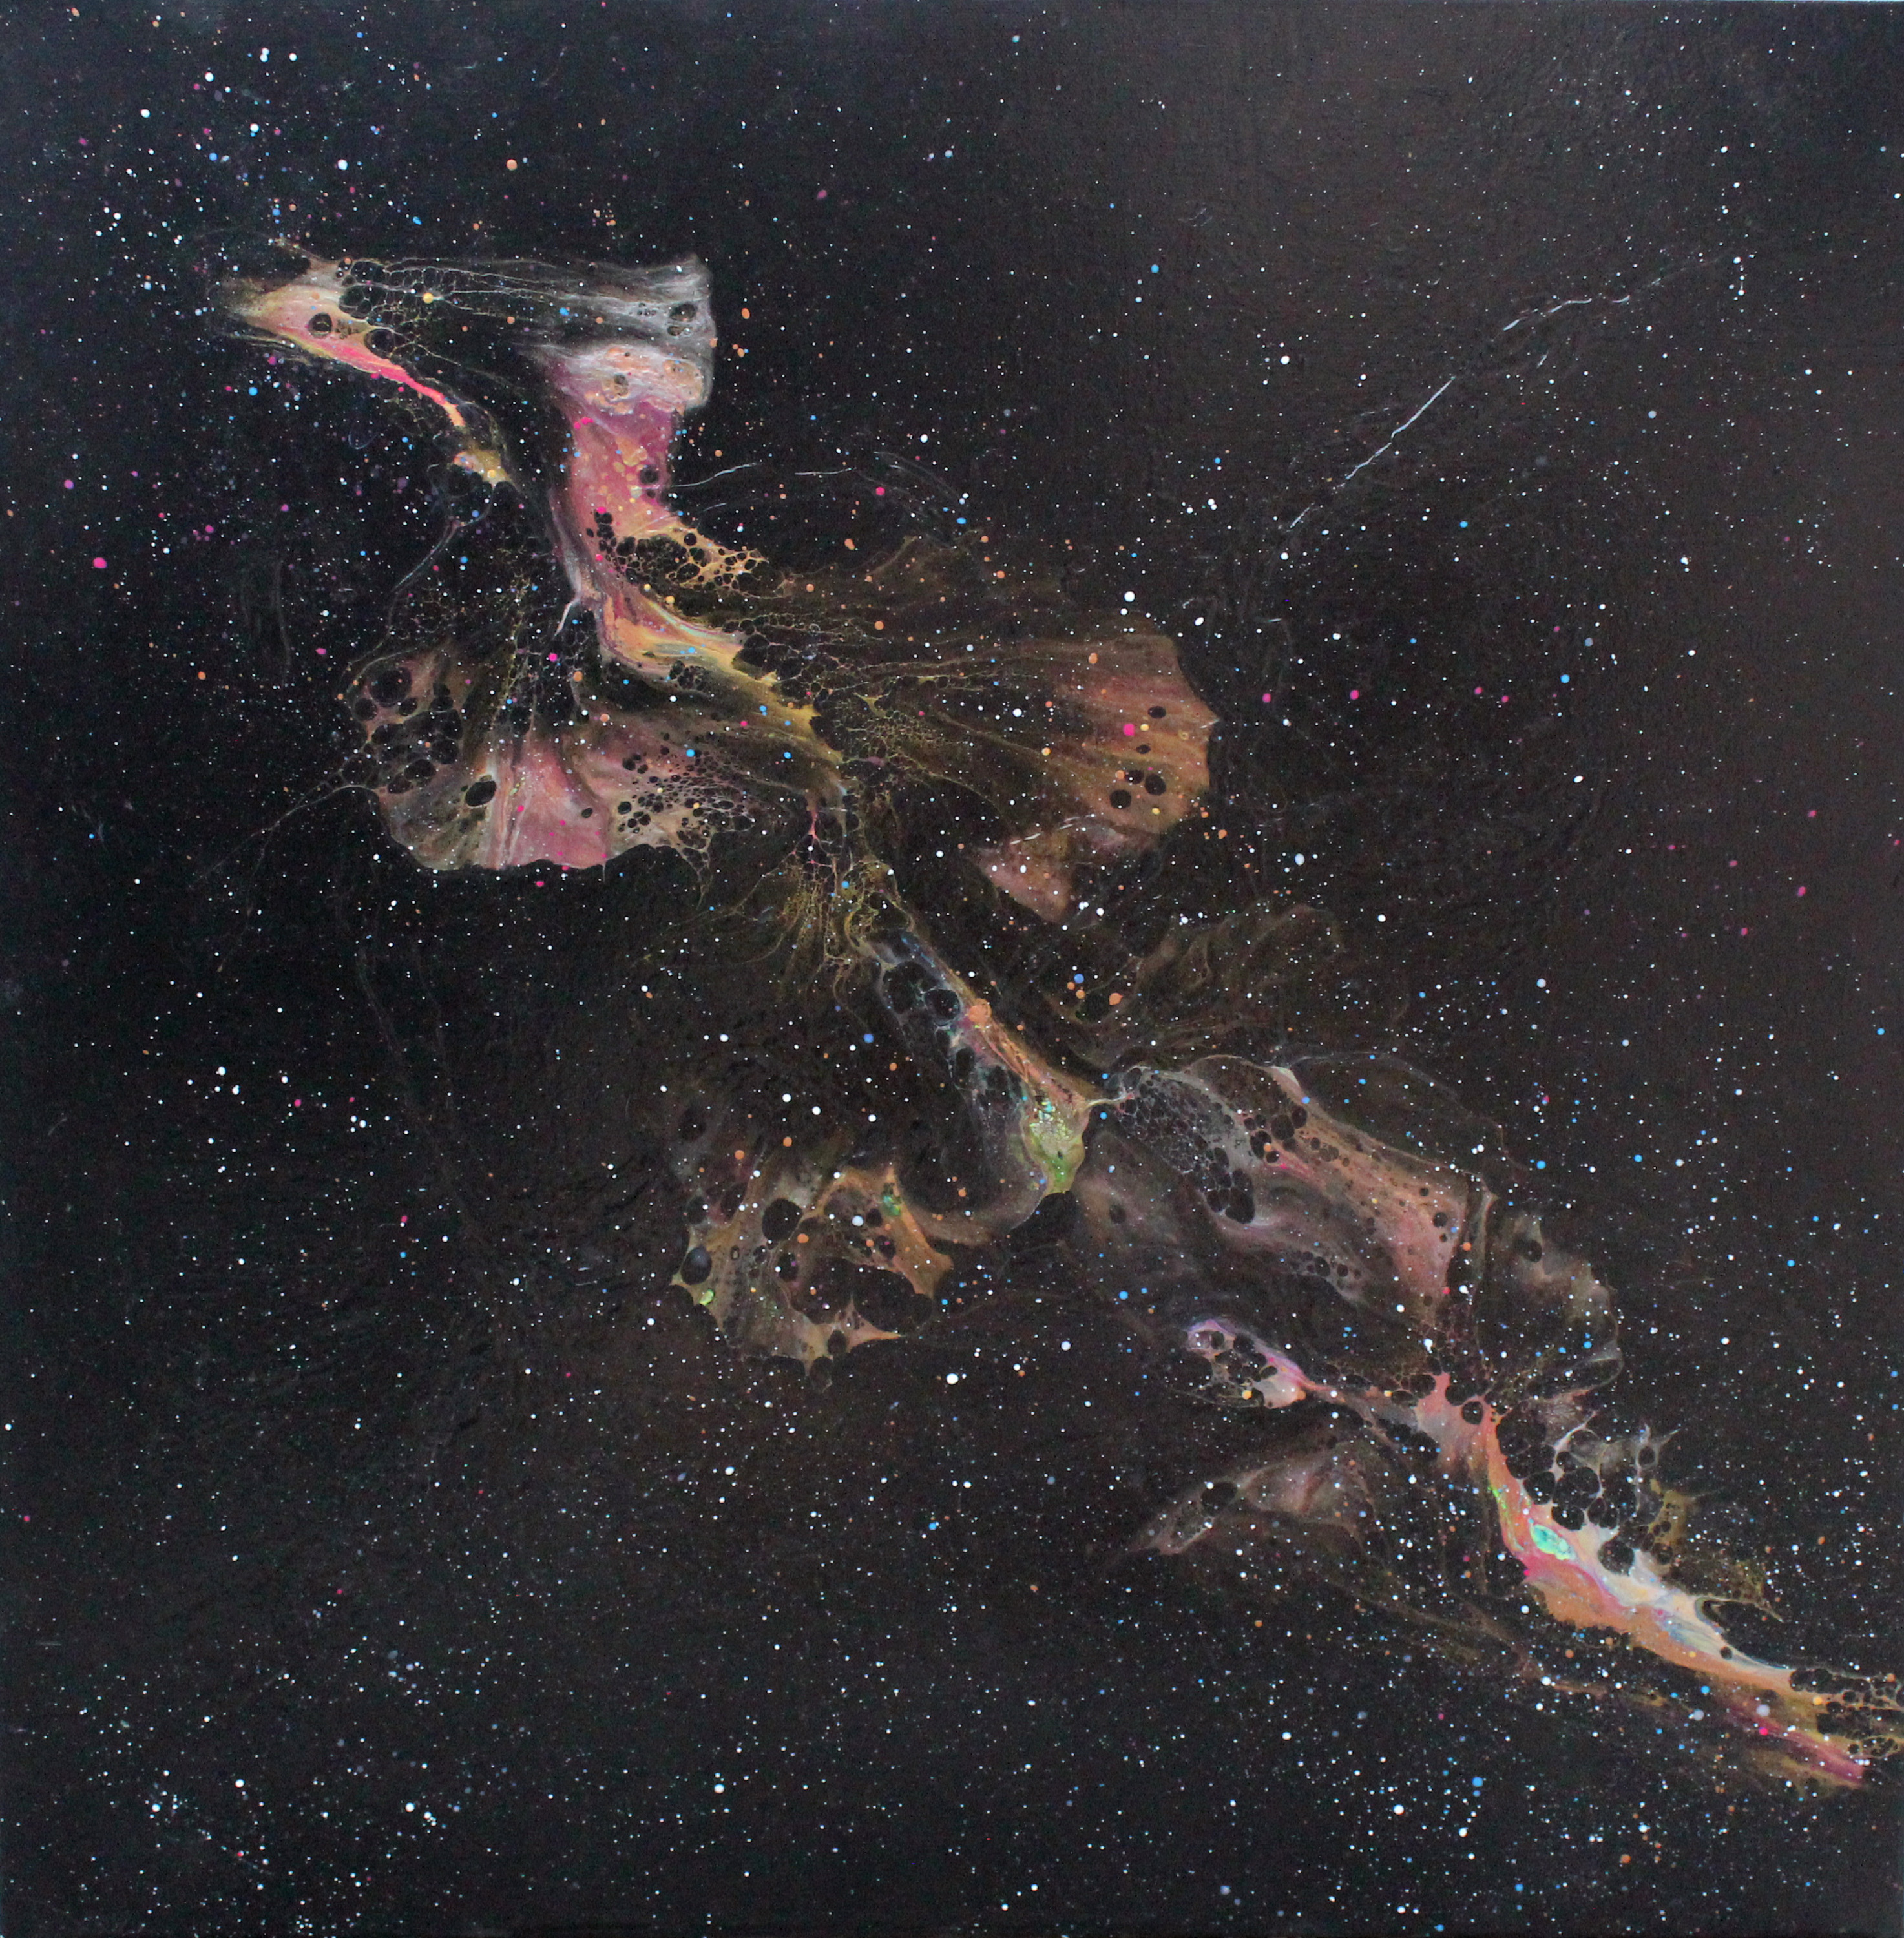 Joe stublick   seahorse nebula 24x24  4500 vbtgm8